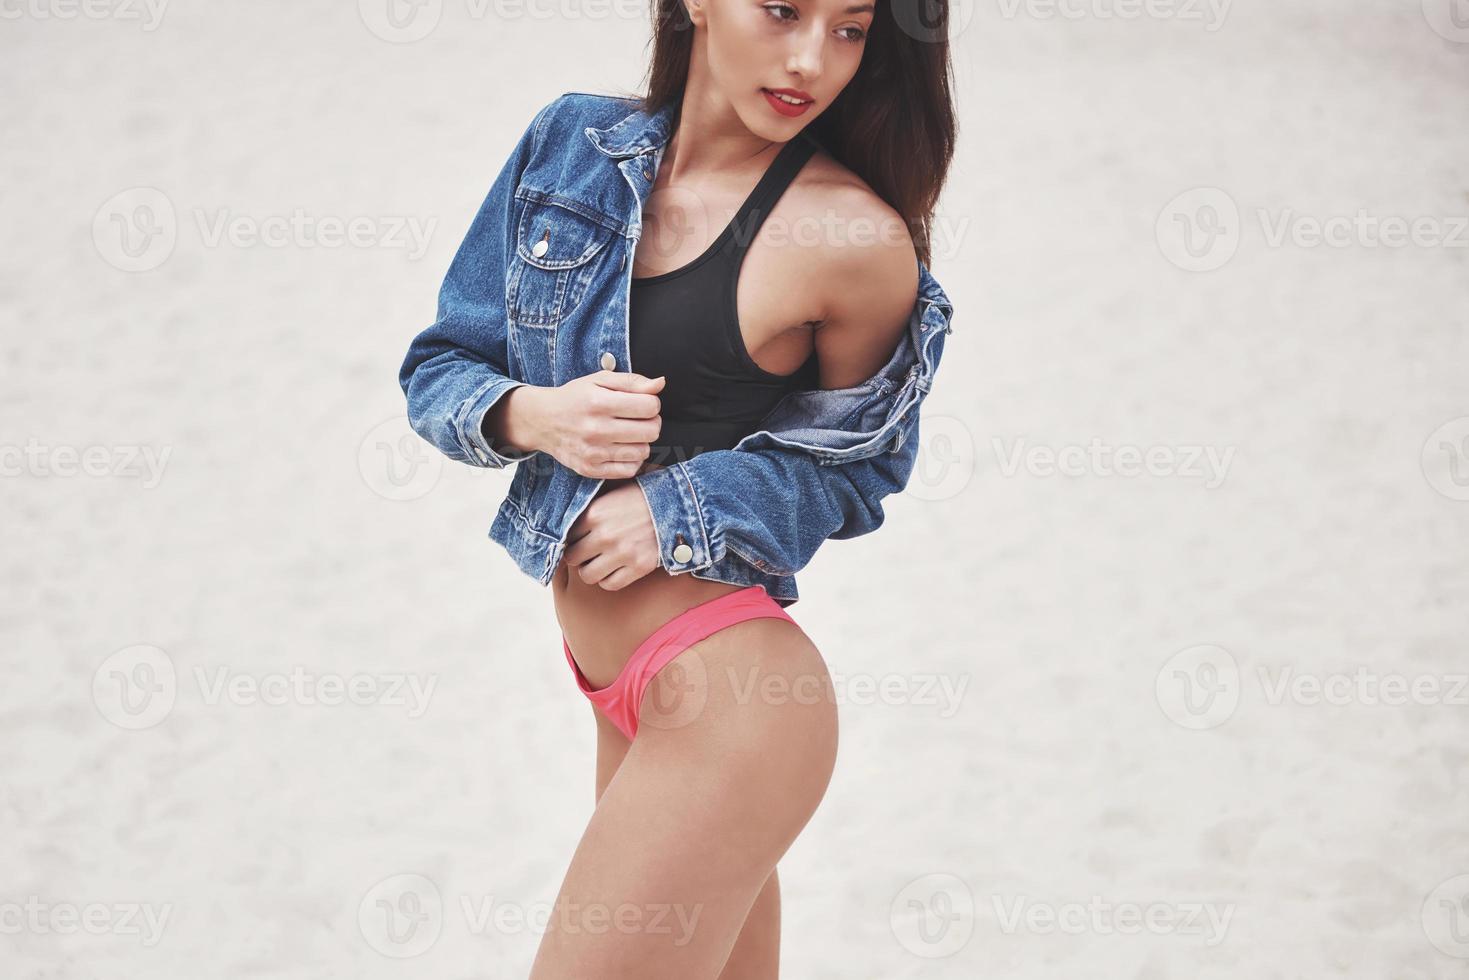 vacker smal lyxflicka i bikini och jeansjacka på sandstranden på en tropisk ö. sexig solbränd kropp och perfekt figur foto